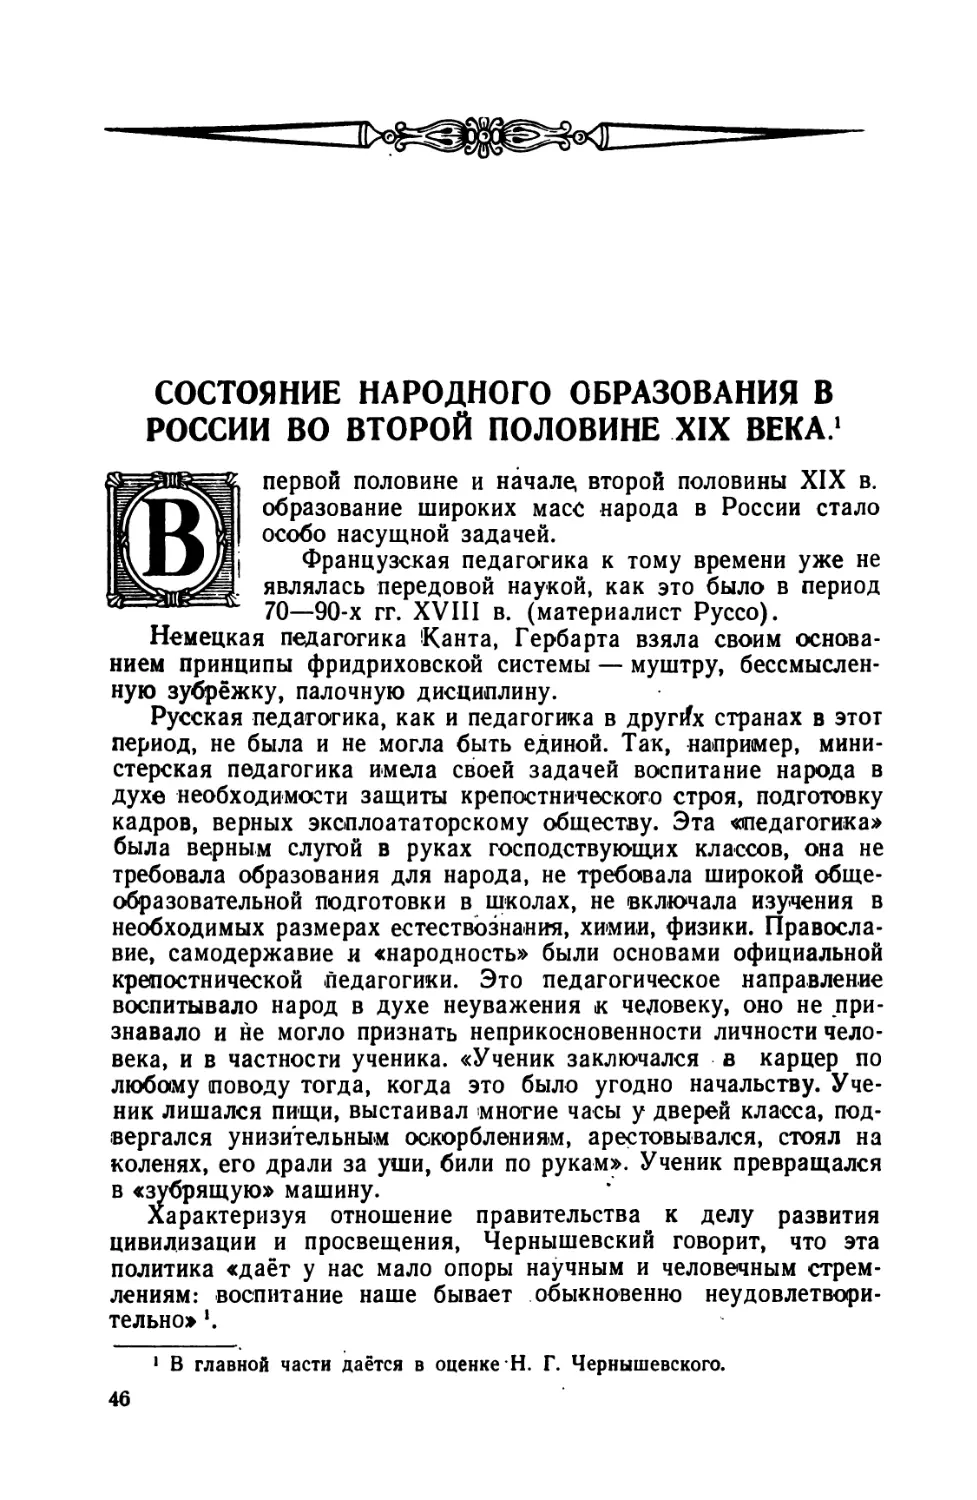 Состояние  народного  образования  в  России  во  второй  половине  XIX  века